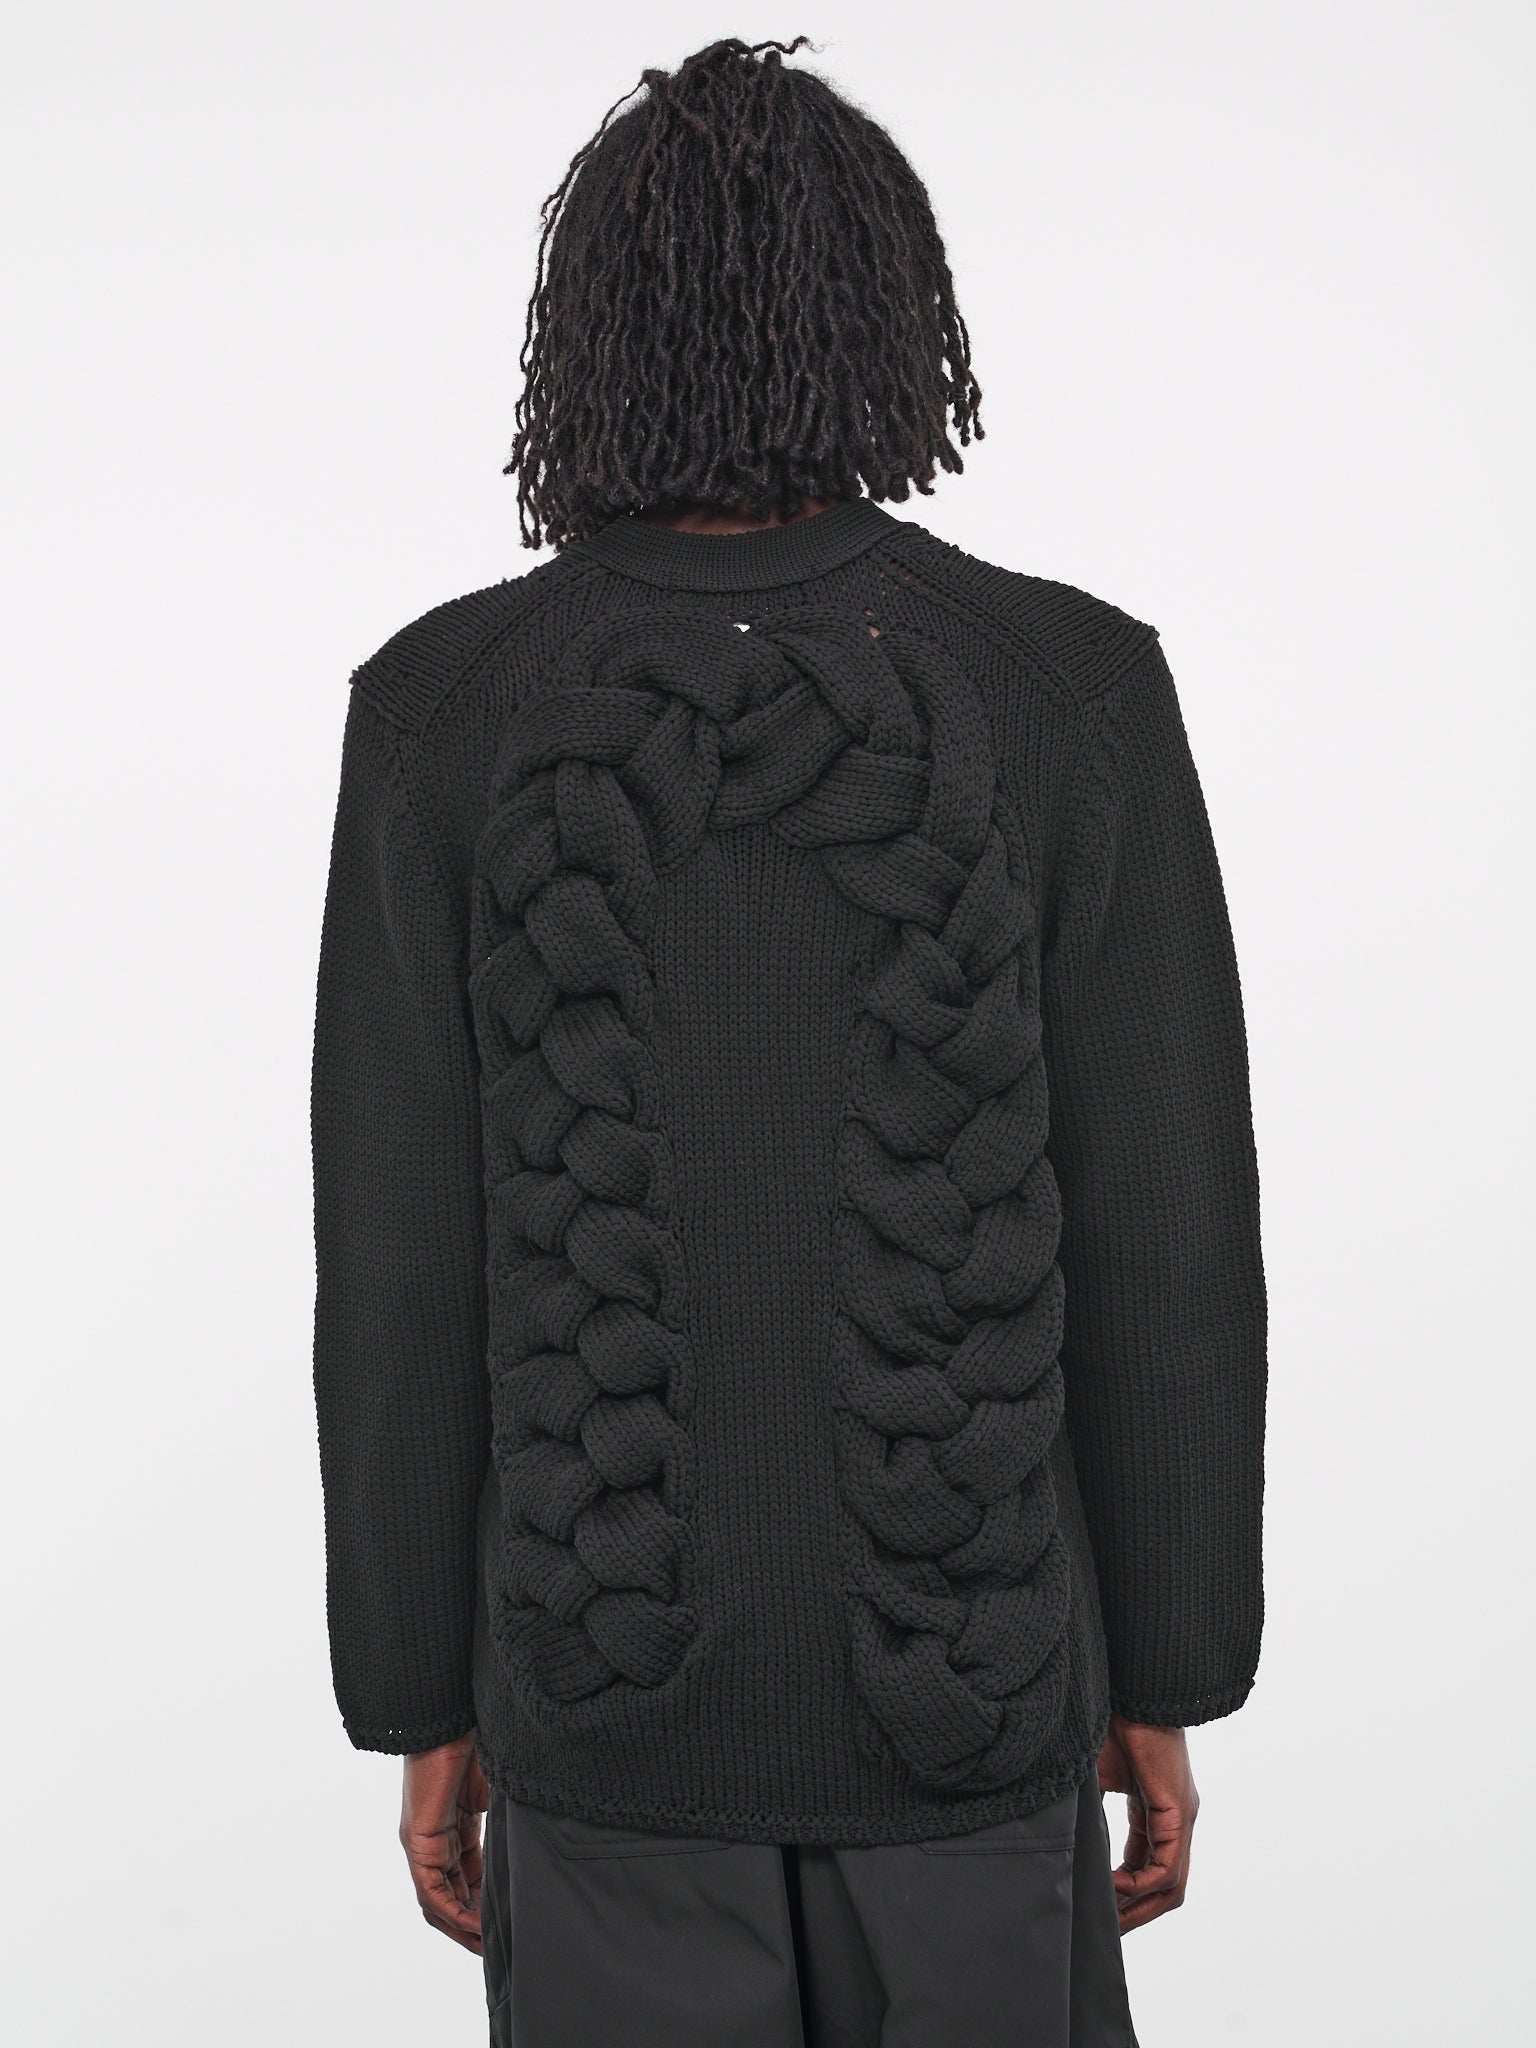 Braided Knit Cardigan (PL-N008-051-BLACK)